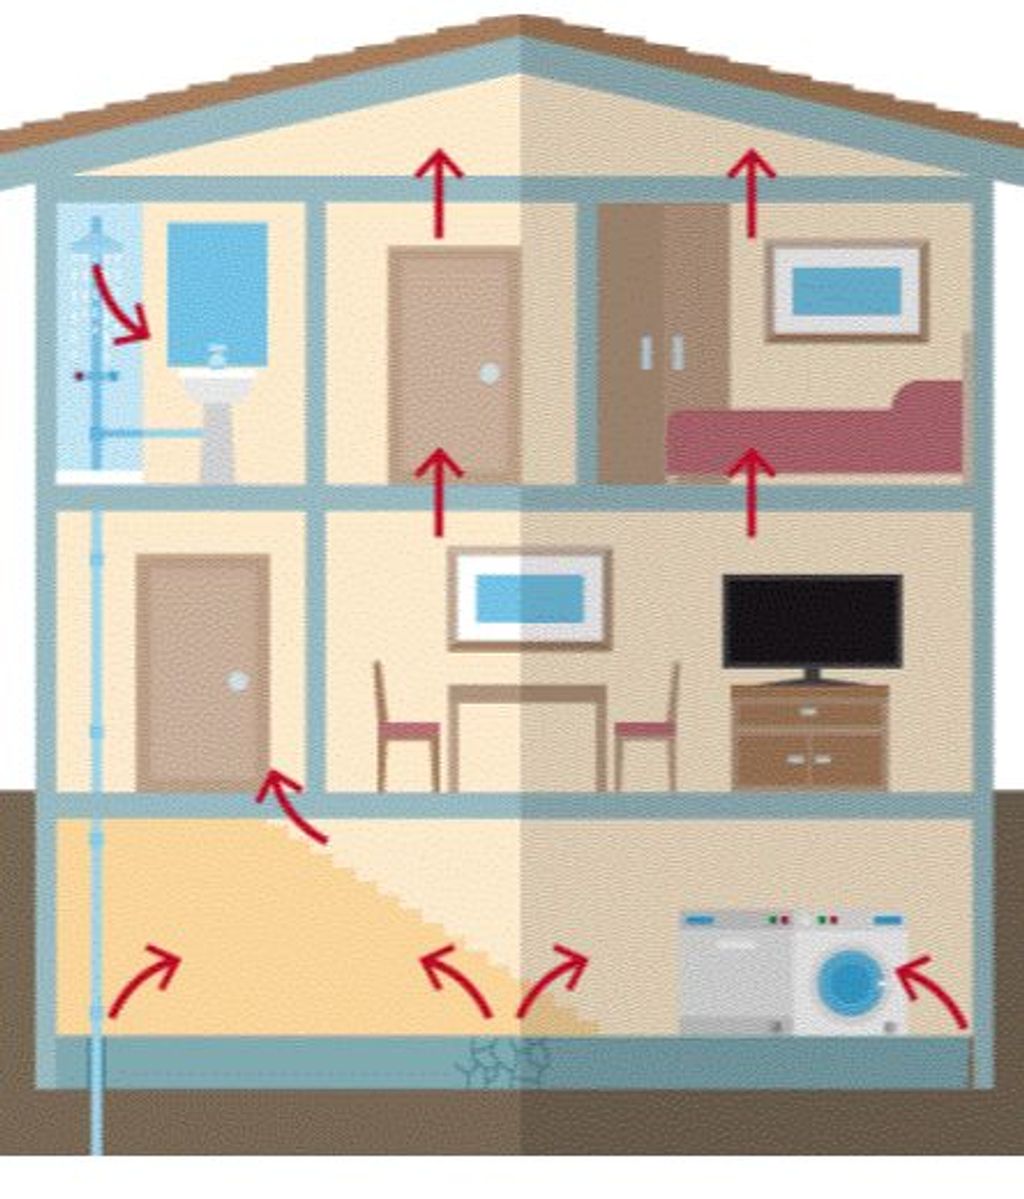 Por dónde entra más radón en casa